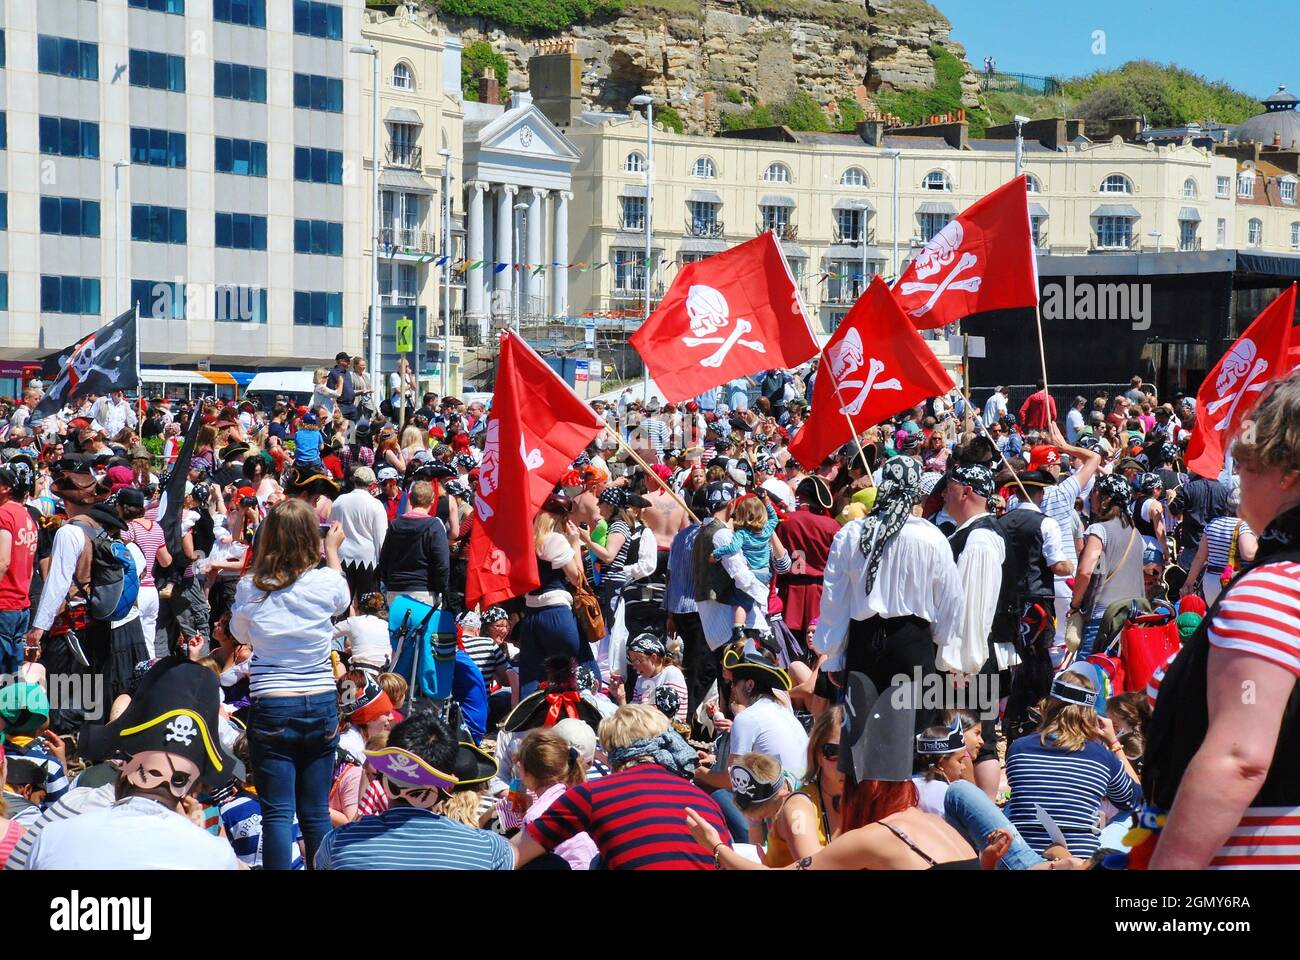 Als Piraten gekleidete Menschen nehmen am 22. Juli 2012 am Strand von Hastings in East Sussex, England, am Piratentag Teil. Das 2009 begonnene Spiel war ein Versuch, den Guinness-Weltrekord für die größte Anzahl von Piraten zu gewinnen, die sich am Strand versammelten. Stockfoto